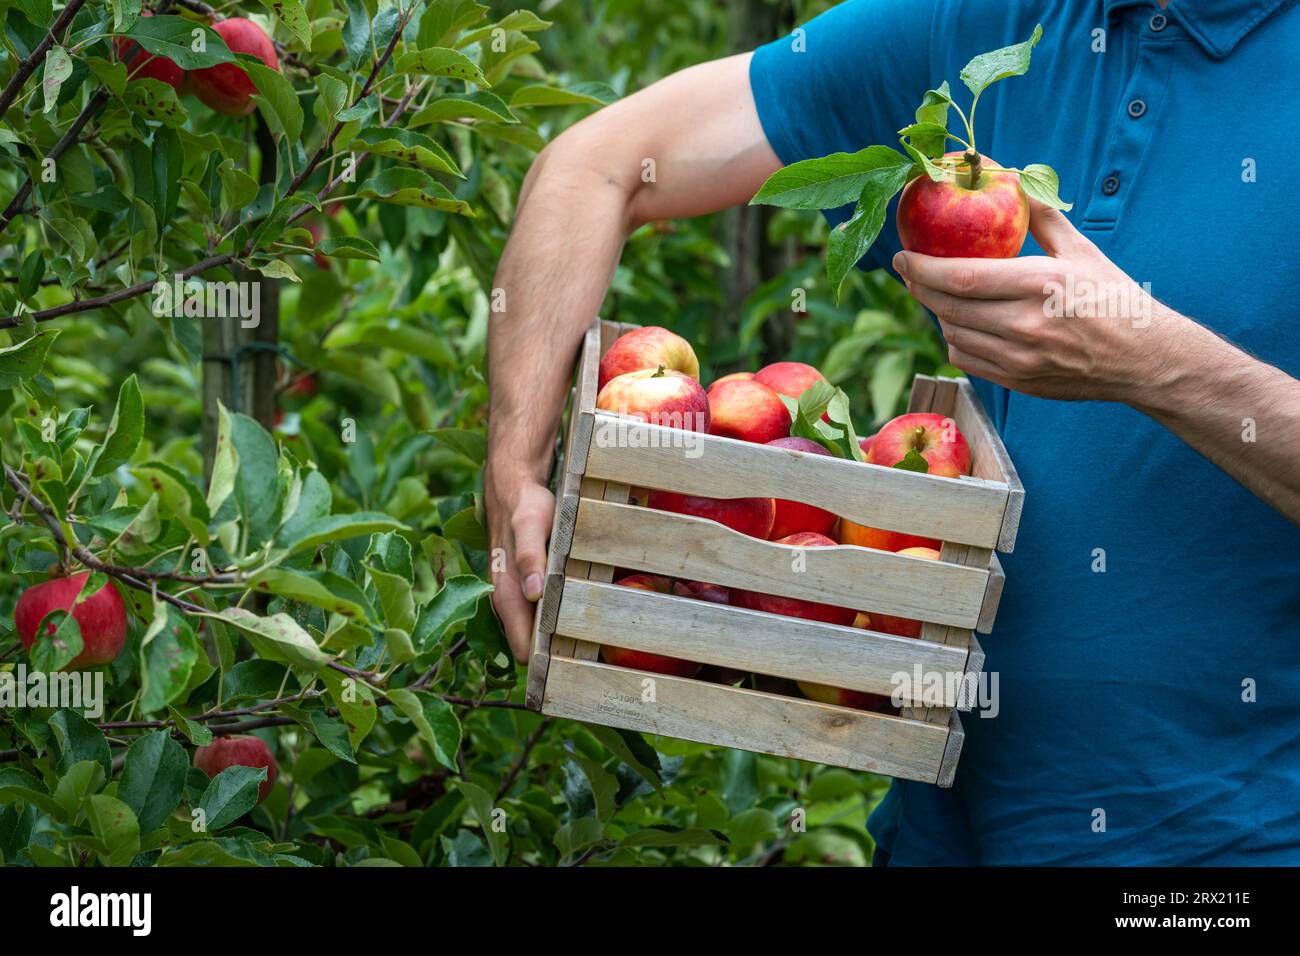 Récolte dans le verger de pommiers, homme ramassant des pommes rouges dans la boîte en bois Banque D'Images